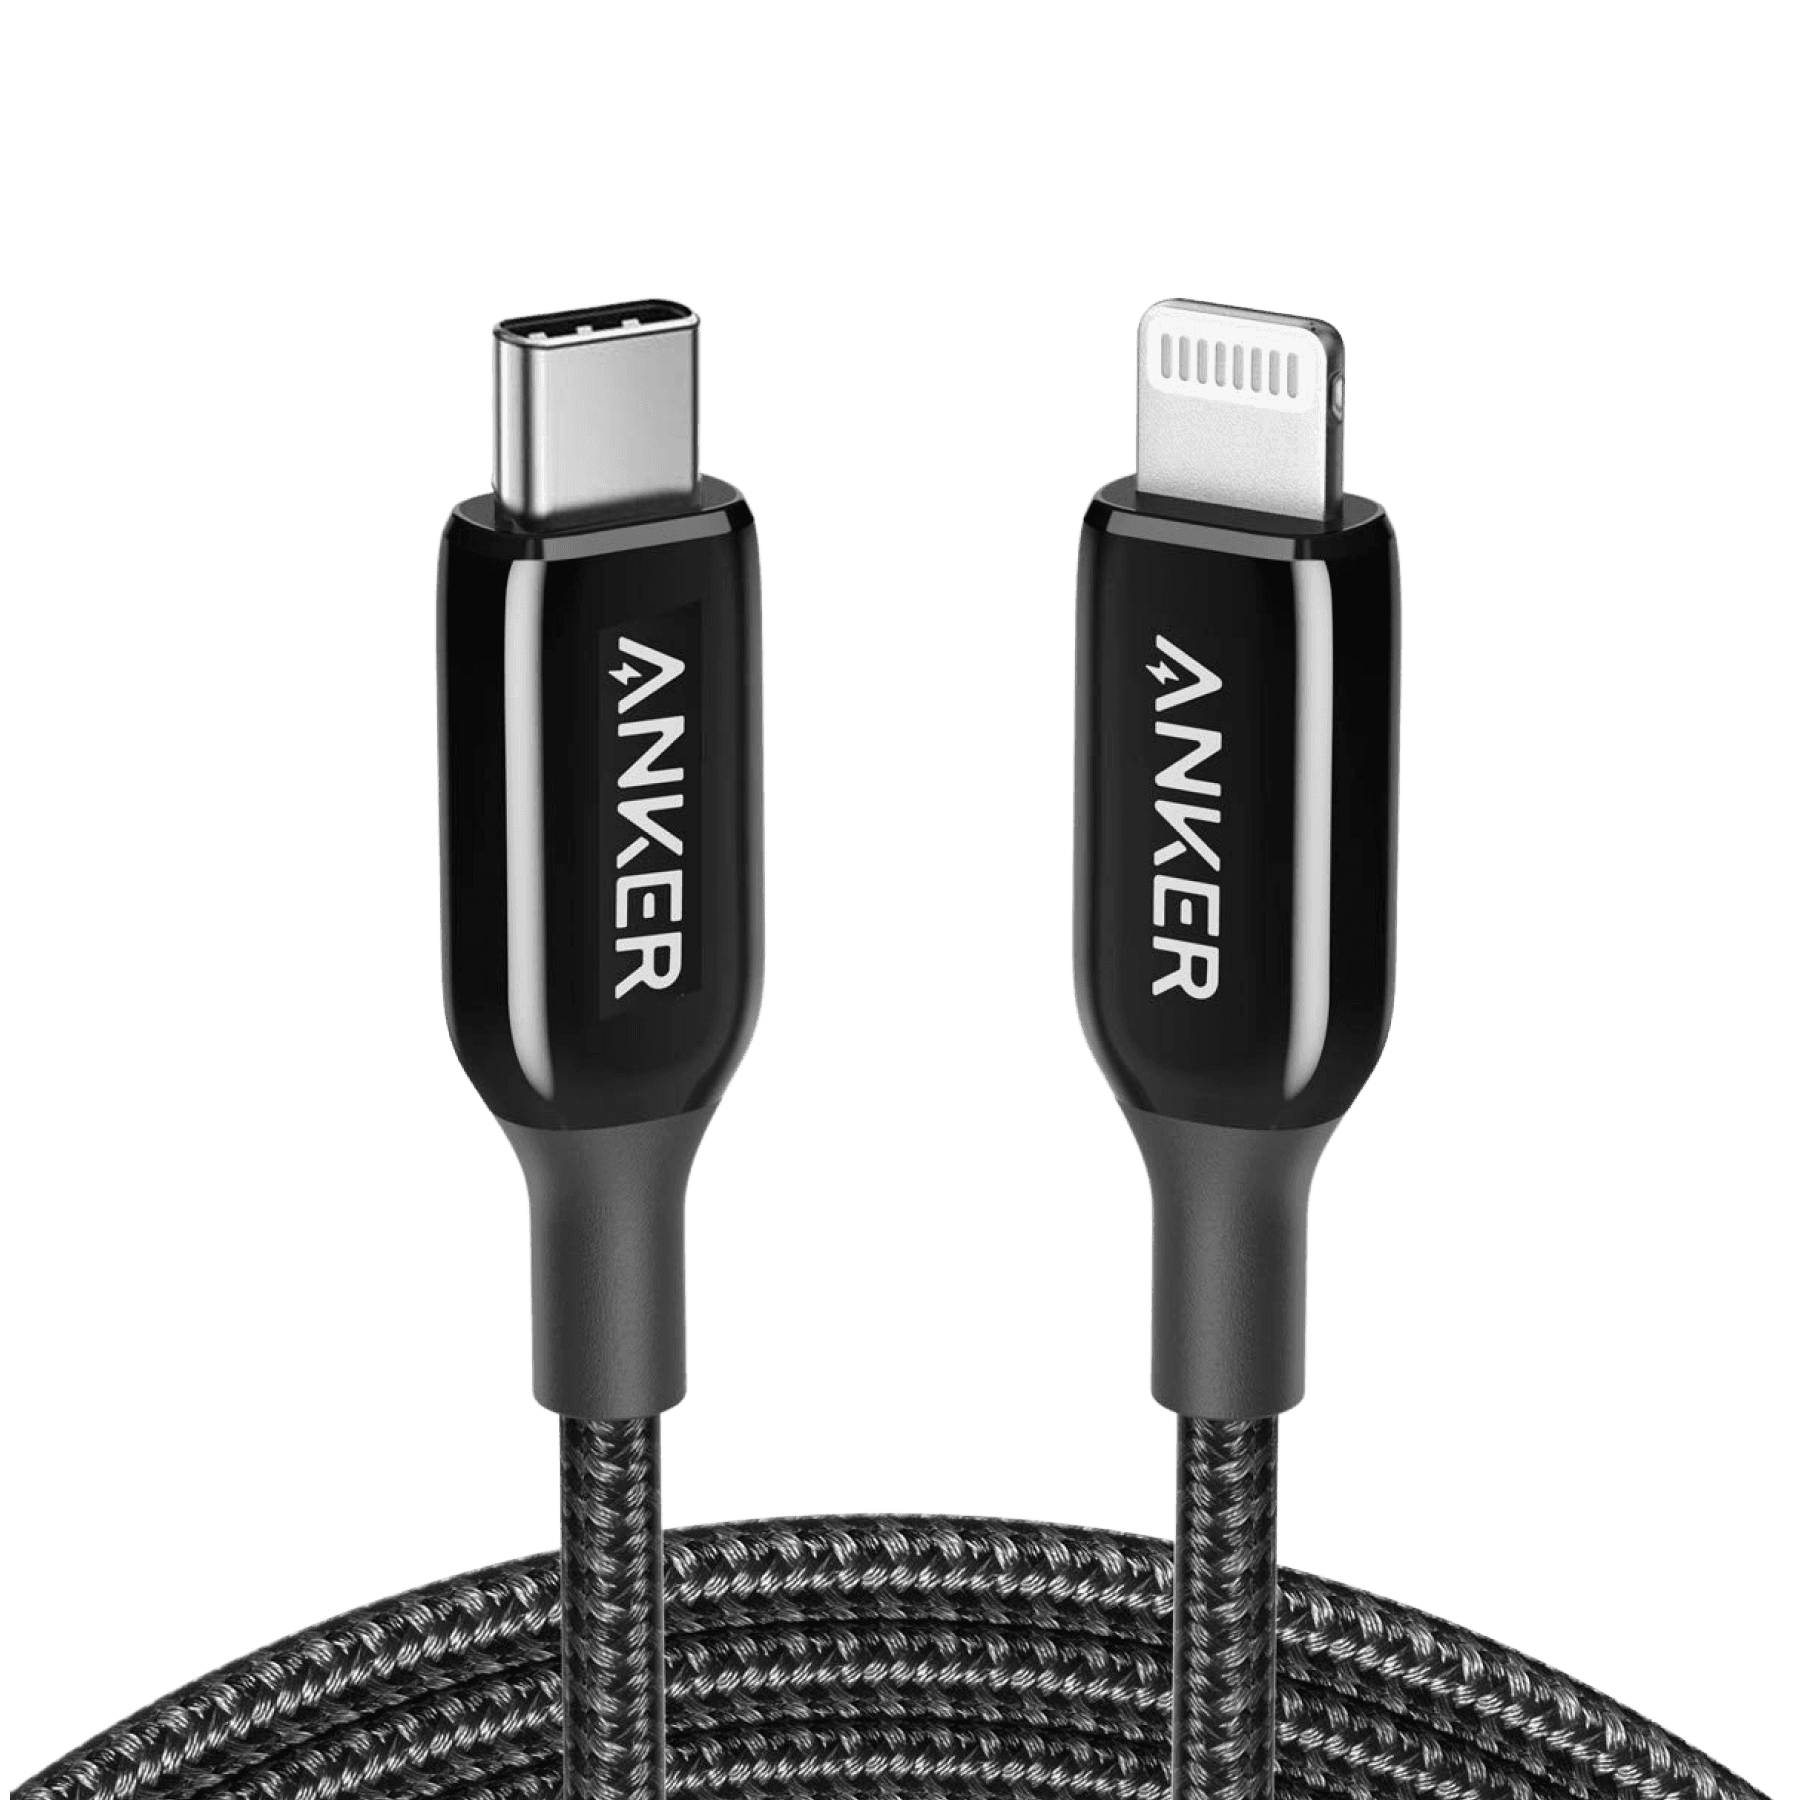 Anker <b>762</b> USB-C to Lightning Cable (3ft / 6ft Nylon)